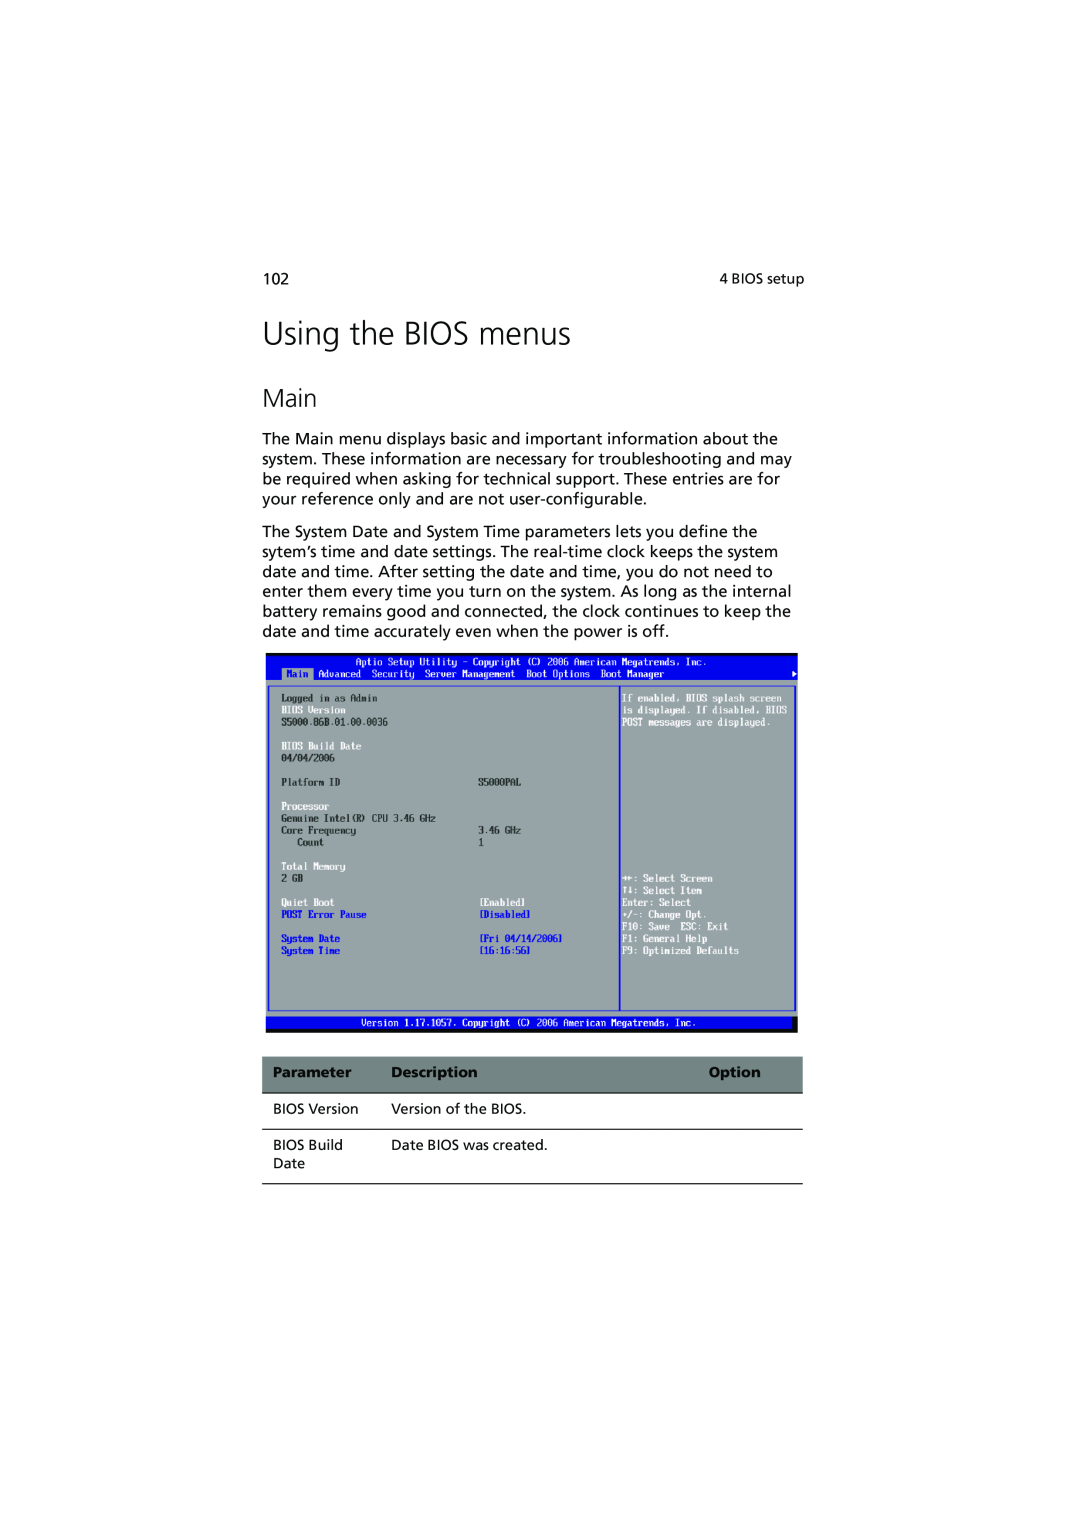 Acer R720 Series manual Using the BIOS menus, Main 